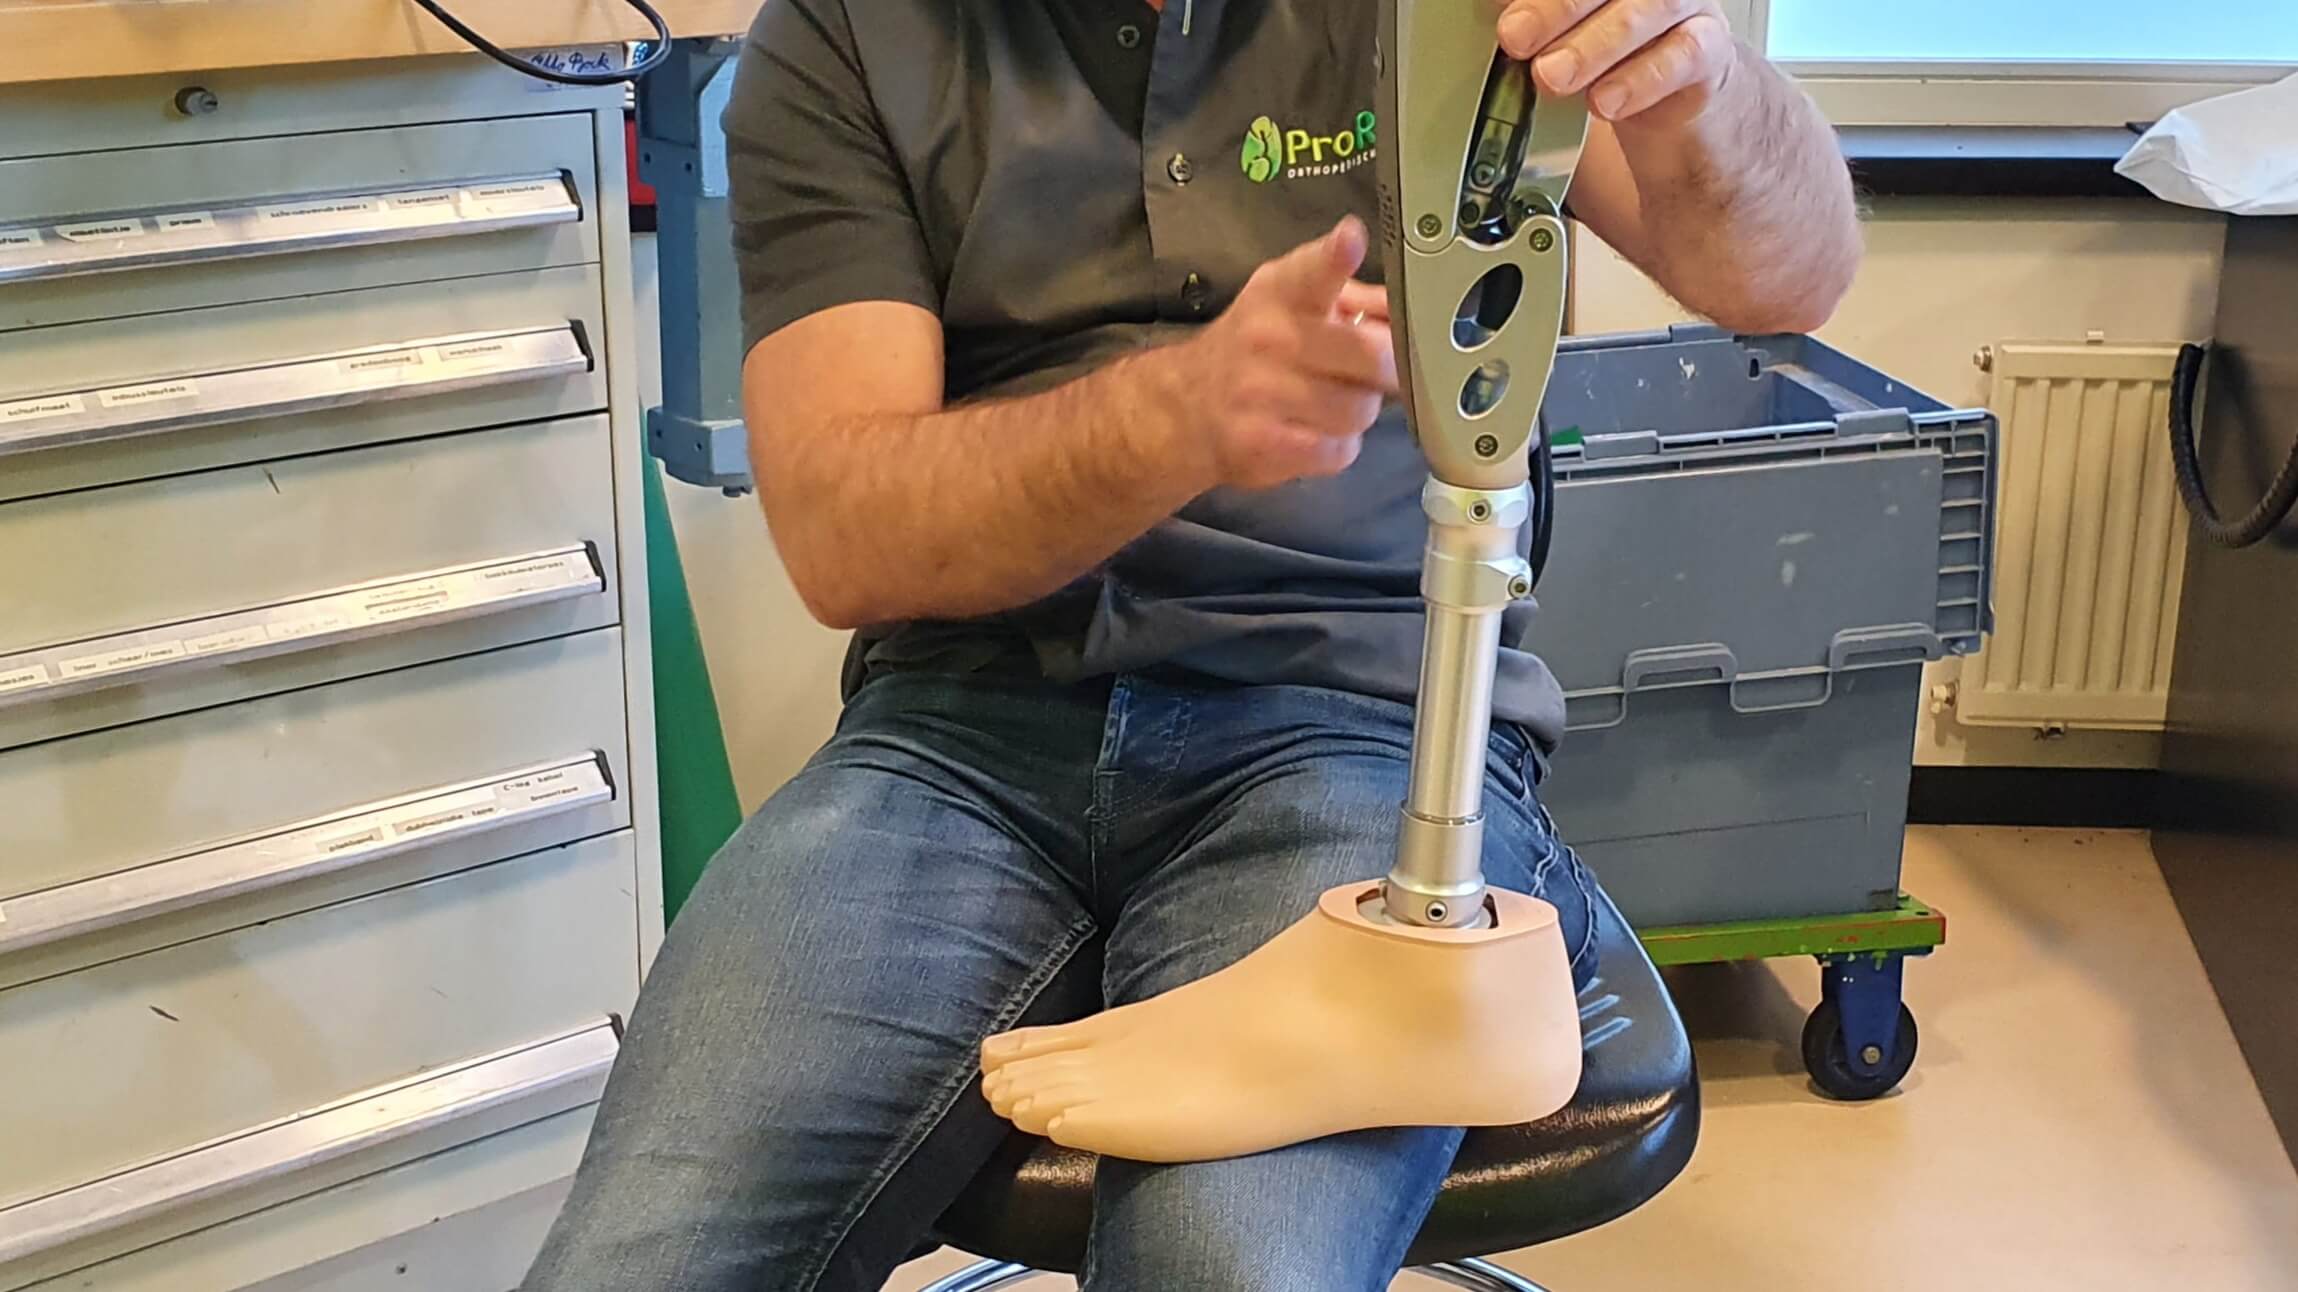 afbeelding van een prothese waarbij de orthopedisch instrumentmaker van proreva uitleg geeft als voorbereiding van een amputatie. De prothesemaker is een man waardoor er geen genderverschil met de patiënt is.